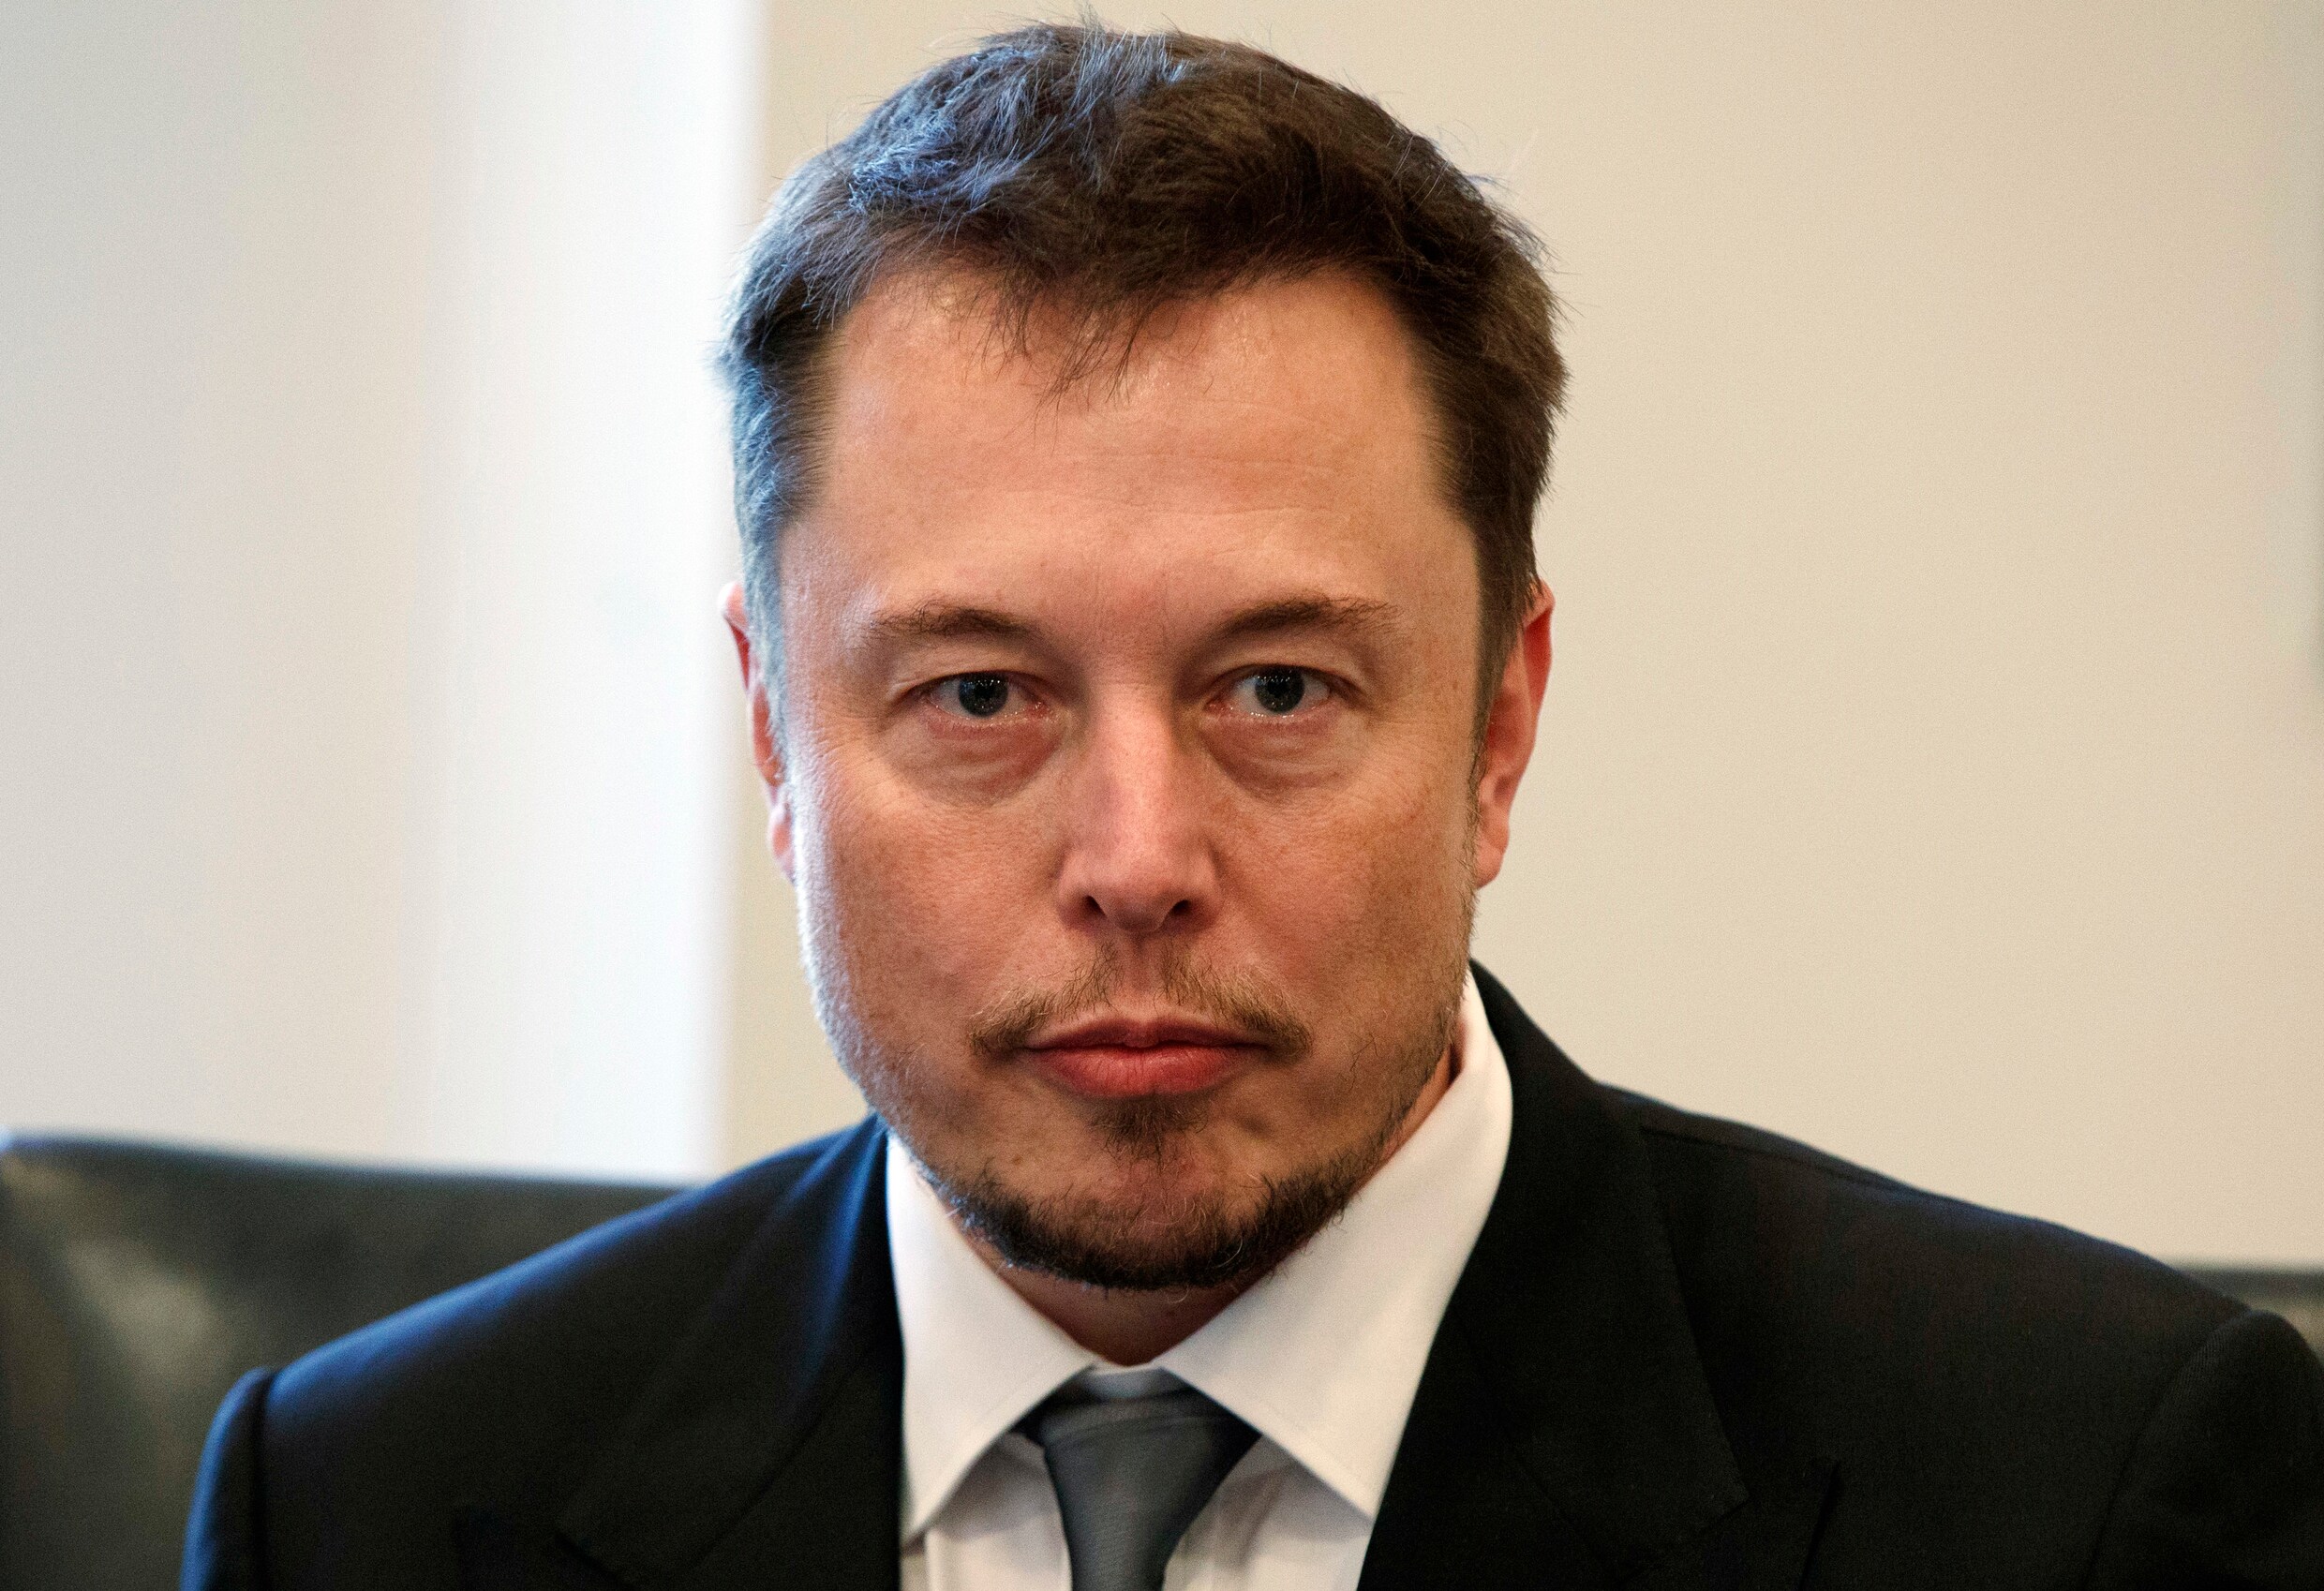 Hoogmoed dreigt CEO van Tesla en SpaceX duur te staan te komen